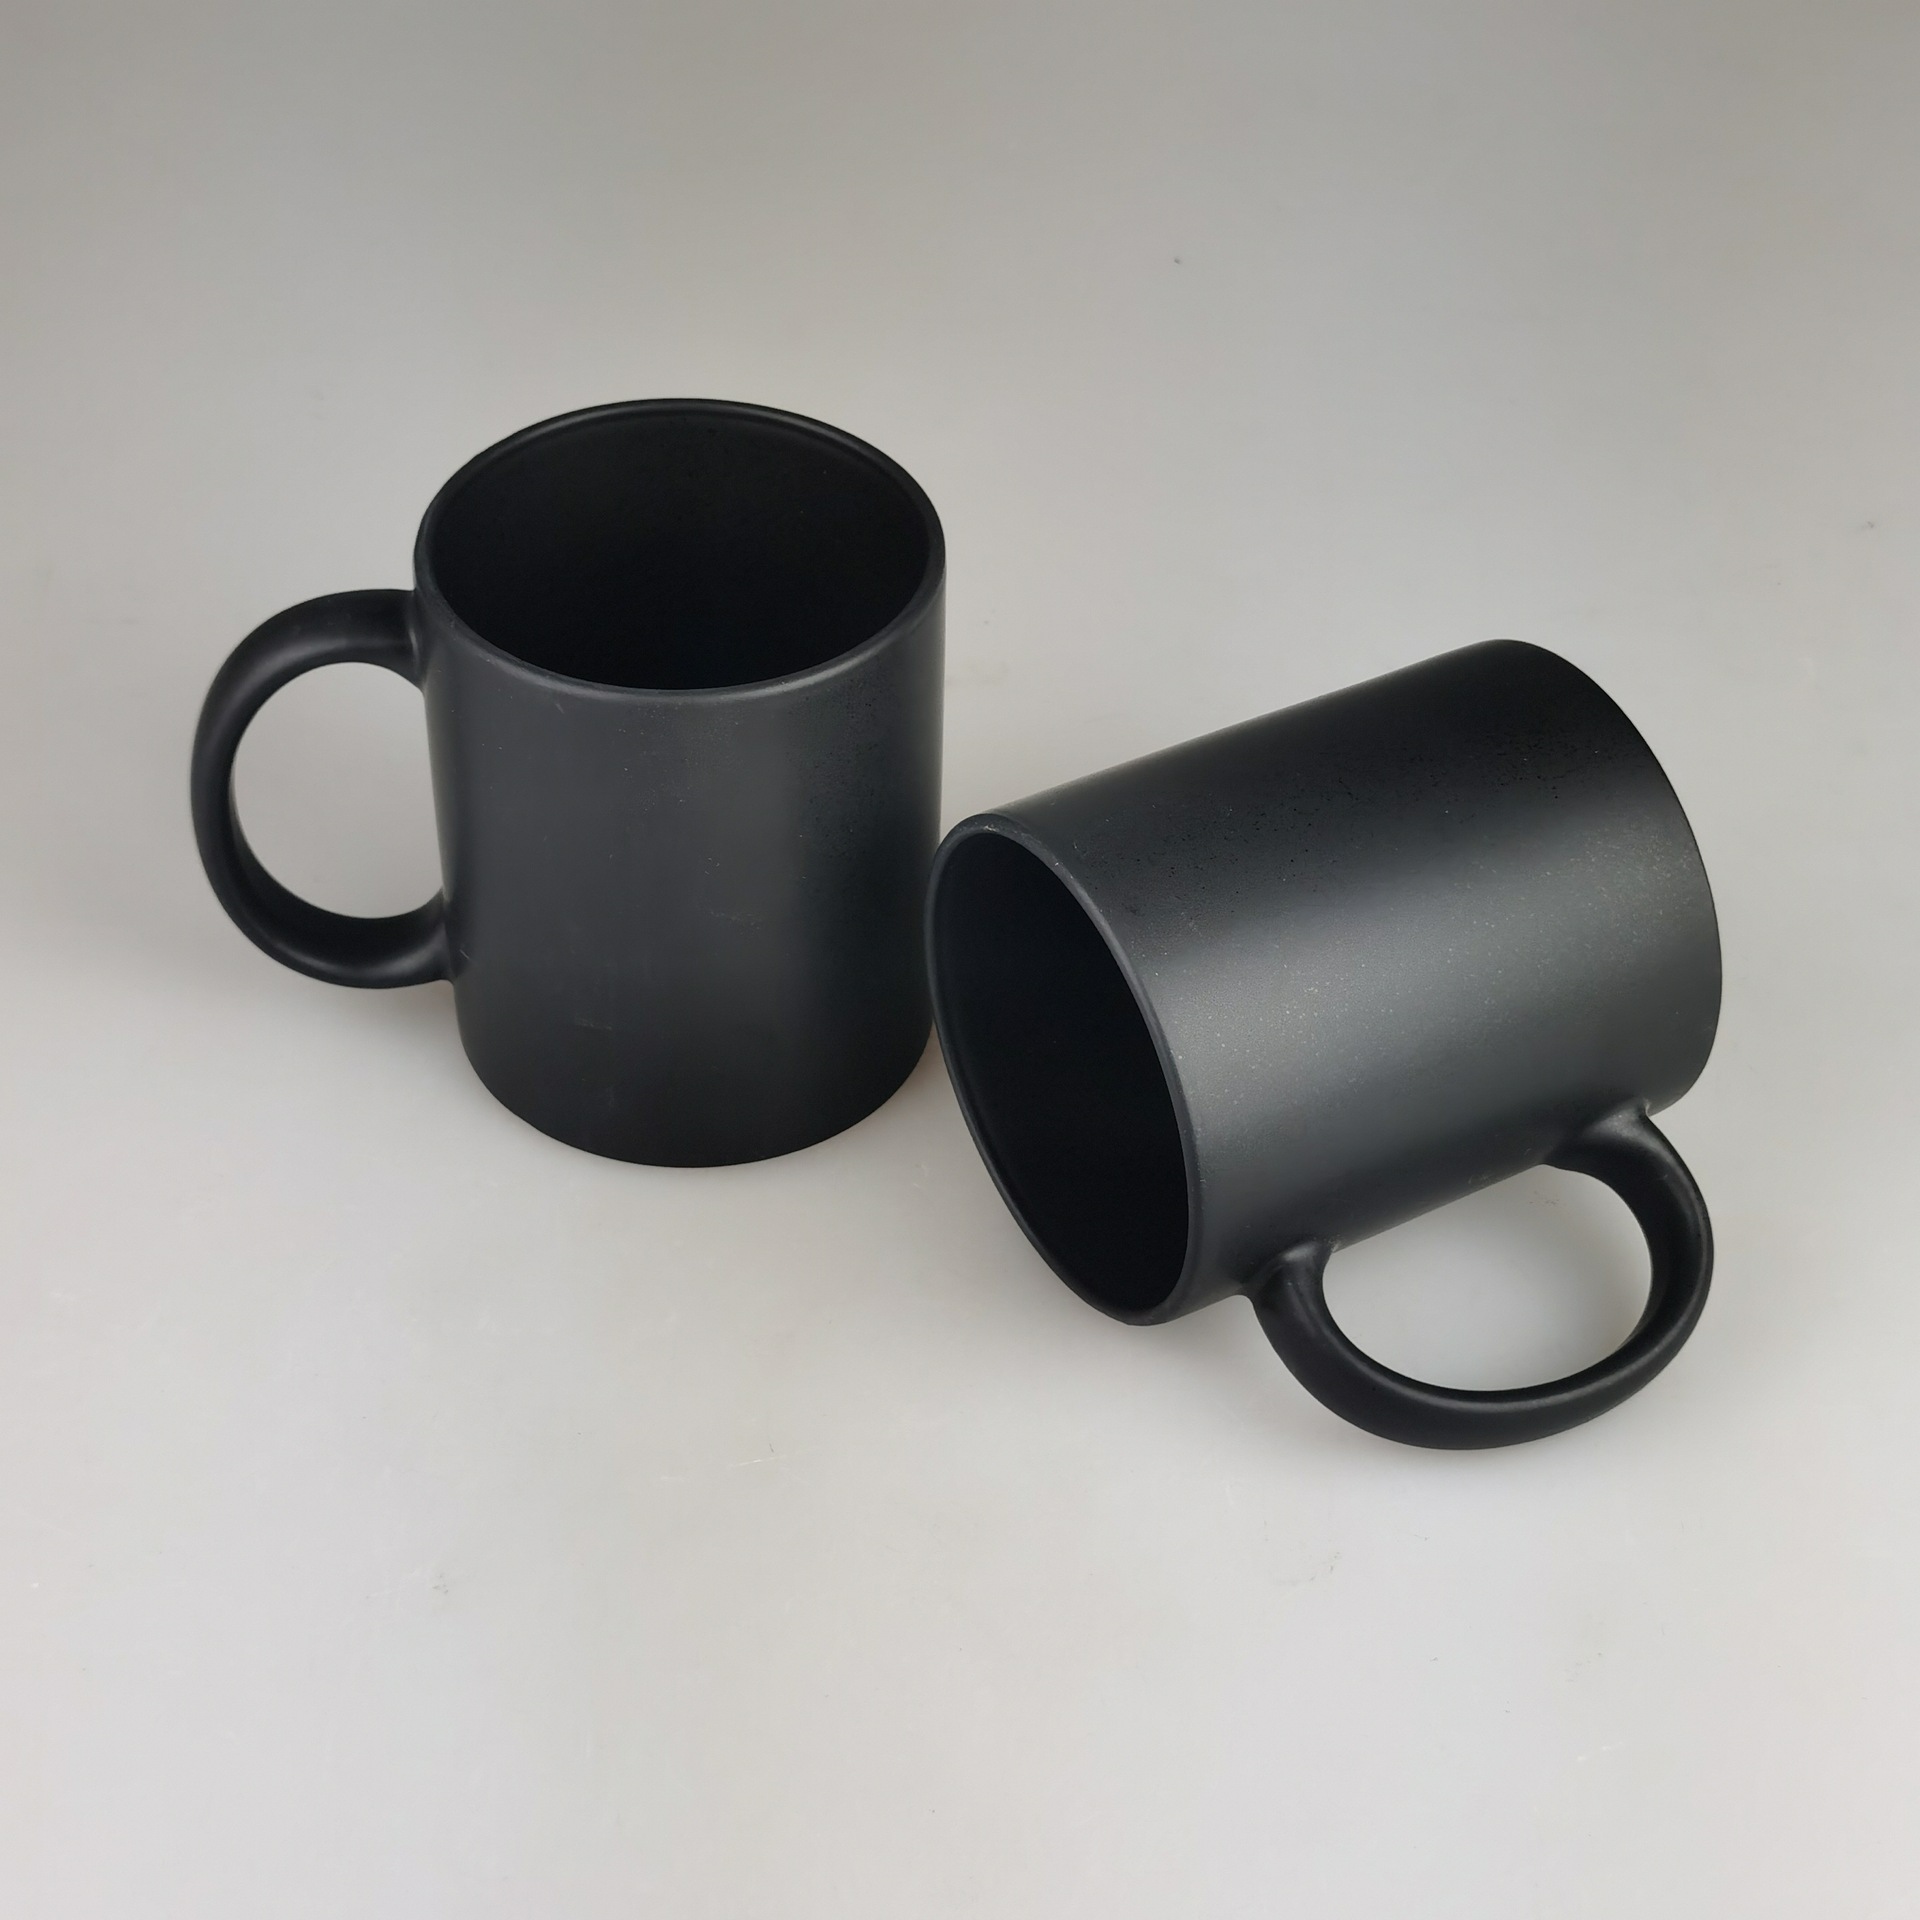 黑色哑光直筒陶瓷杯11盎司马克杯7102磨砂黑色陶瓷杯印制logo杯子